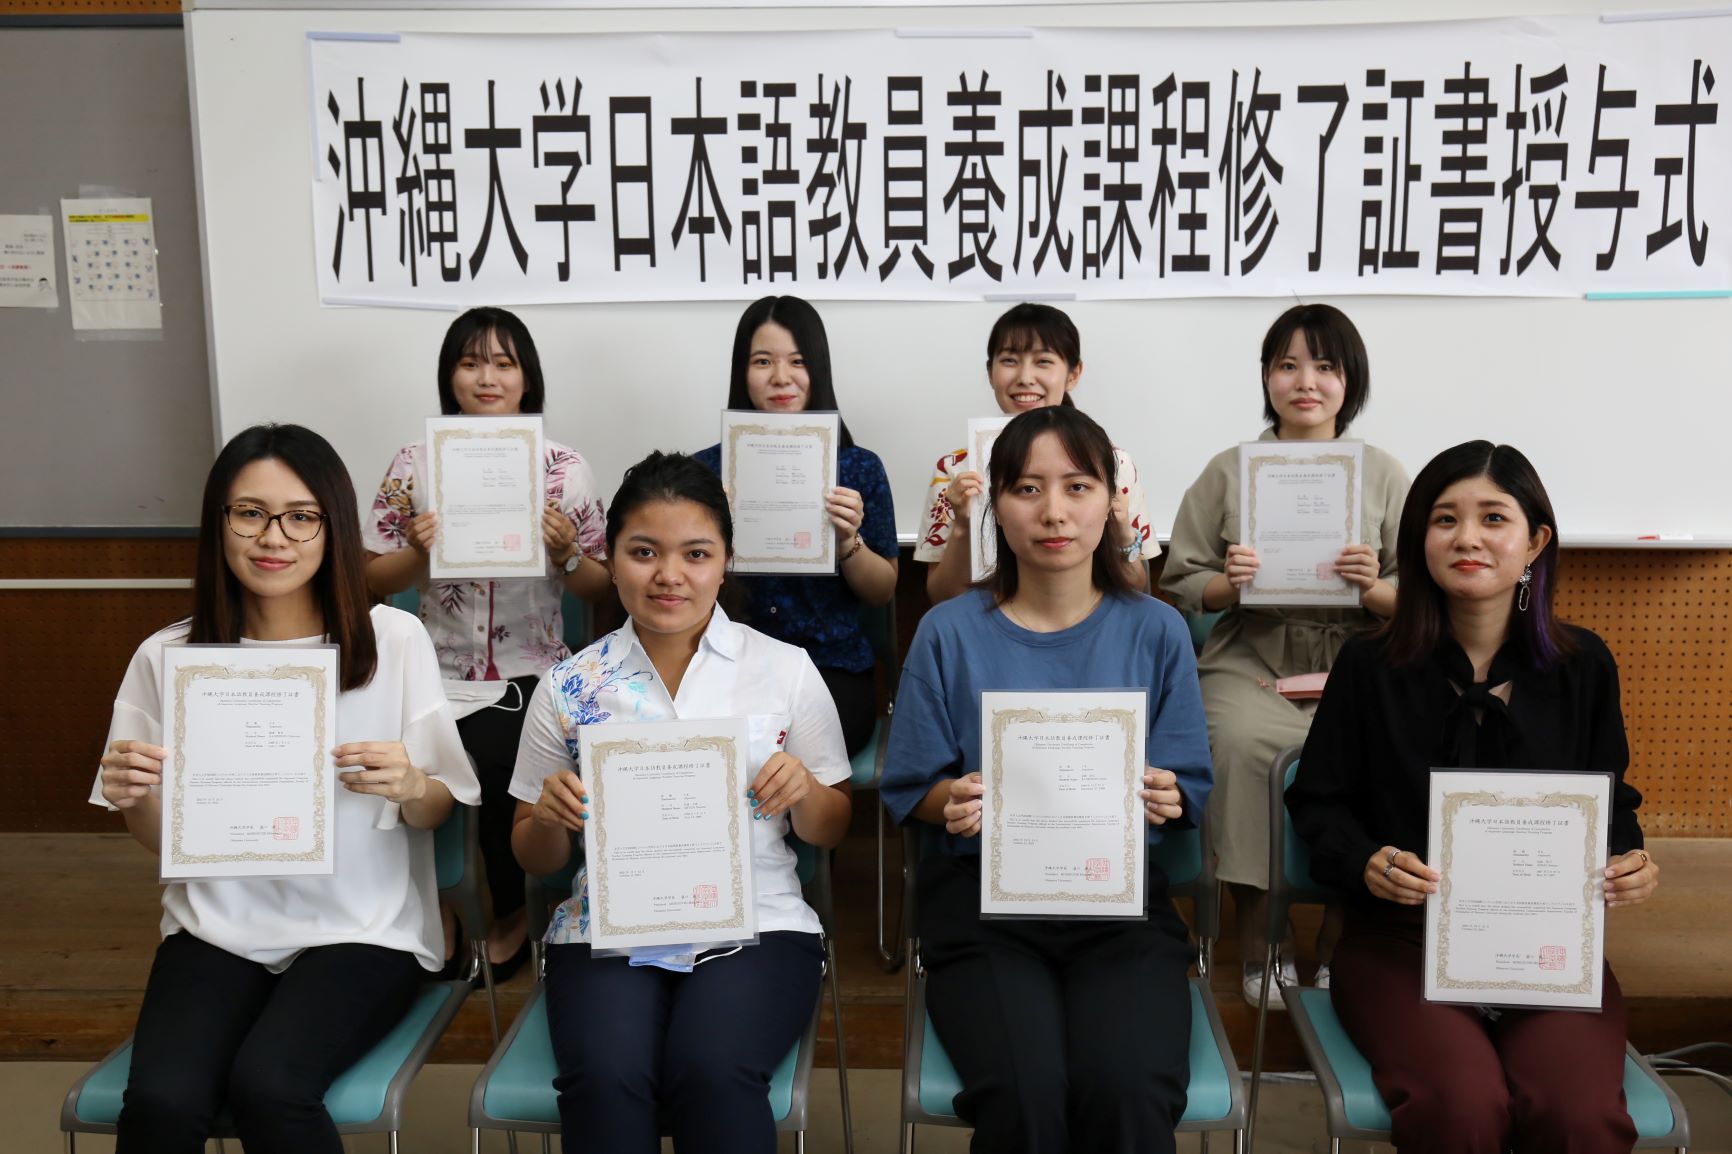 2021年度 日本語教員養成課程修了証書授与式 開催